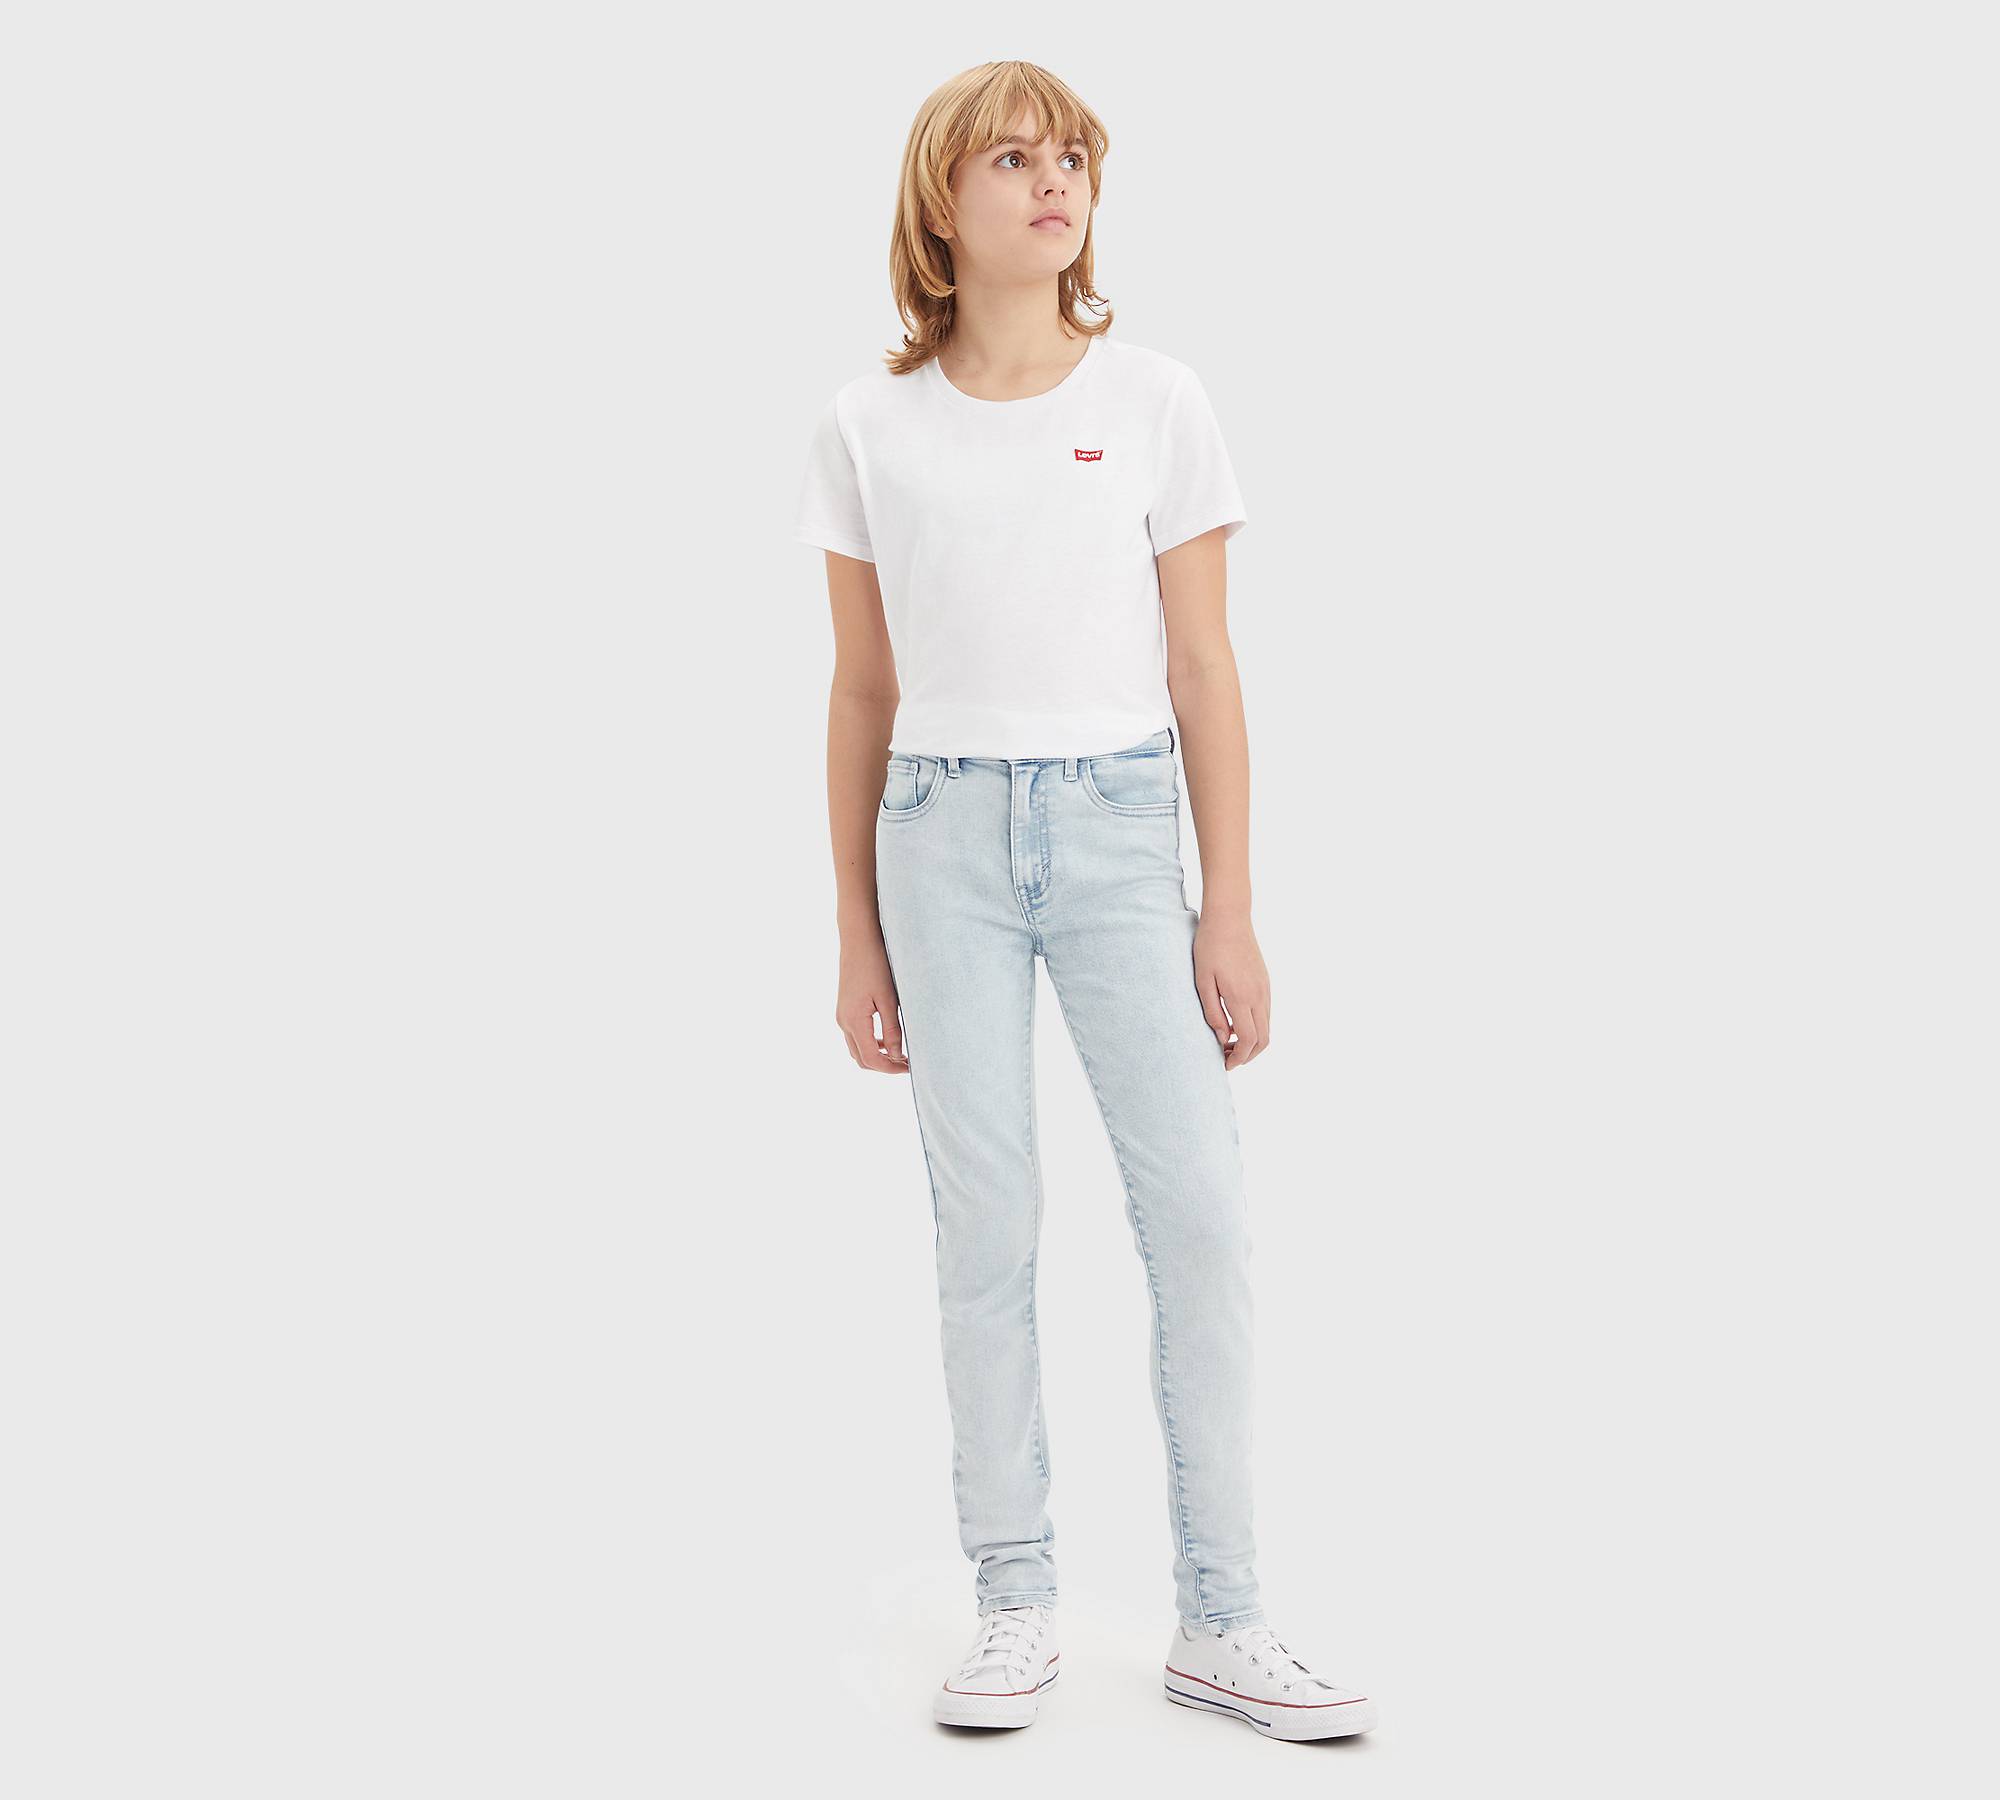 Jeans superceñidos de talle alto 720™ para adolescentes 1